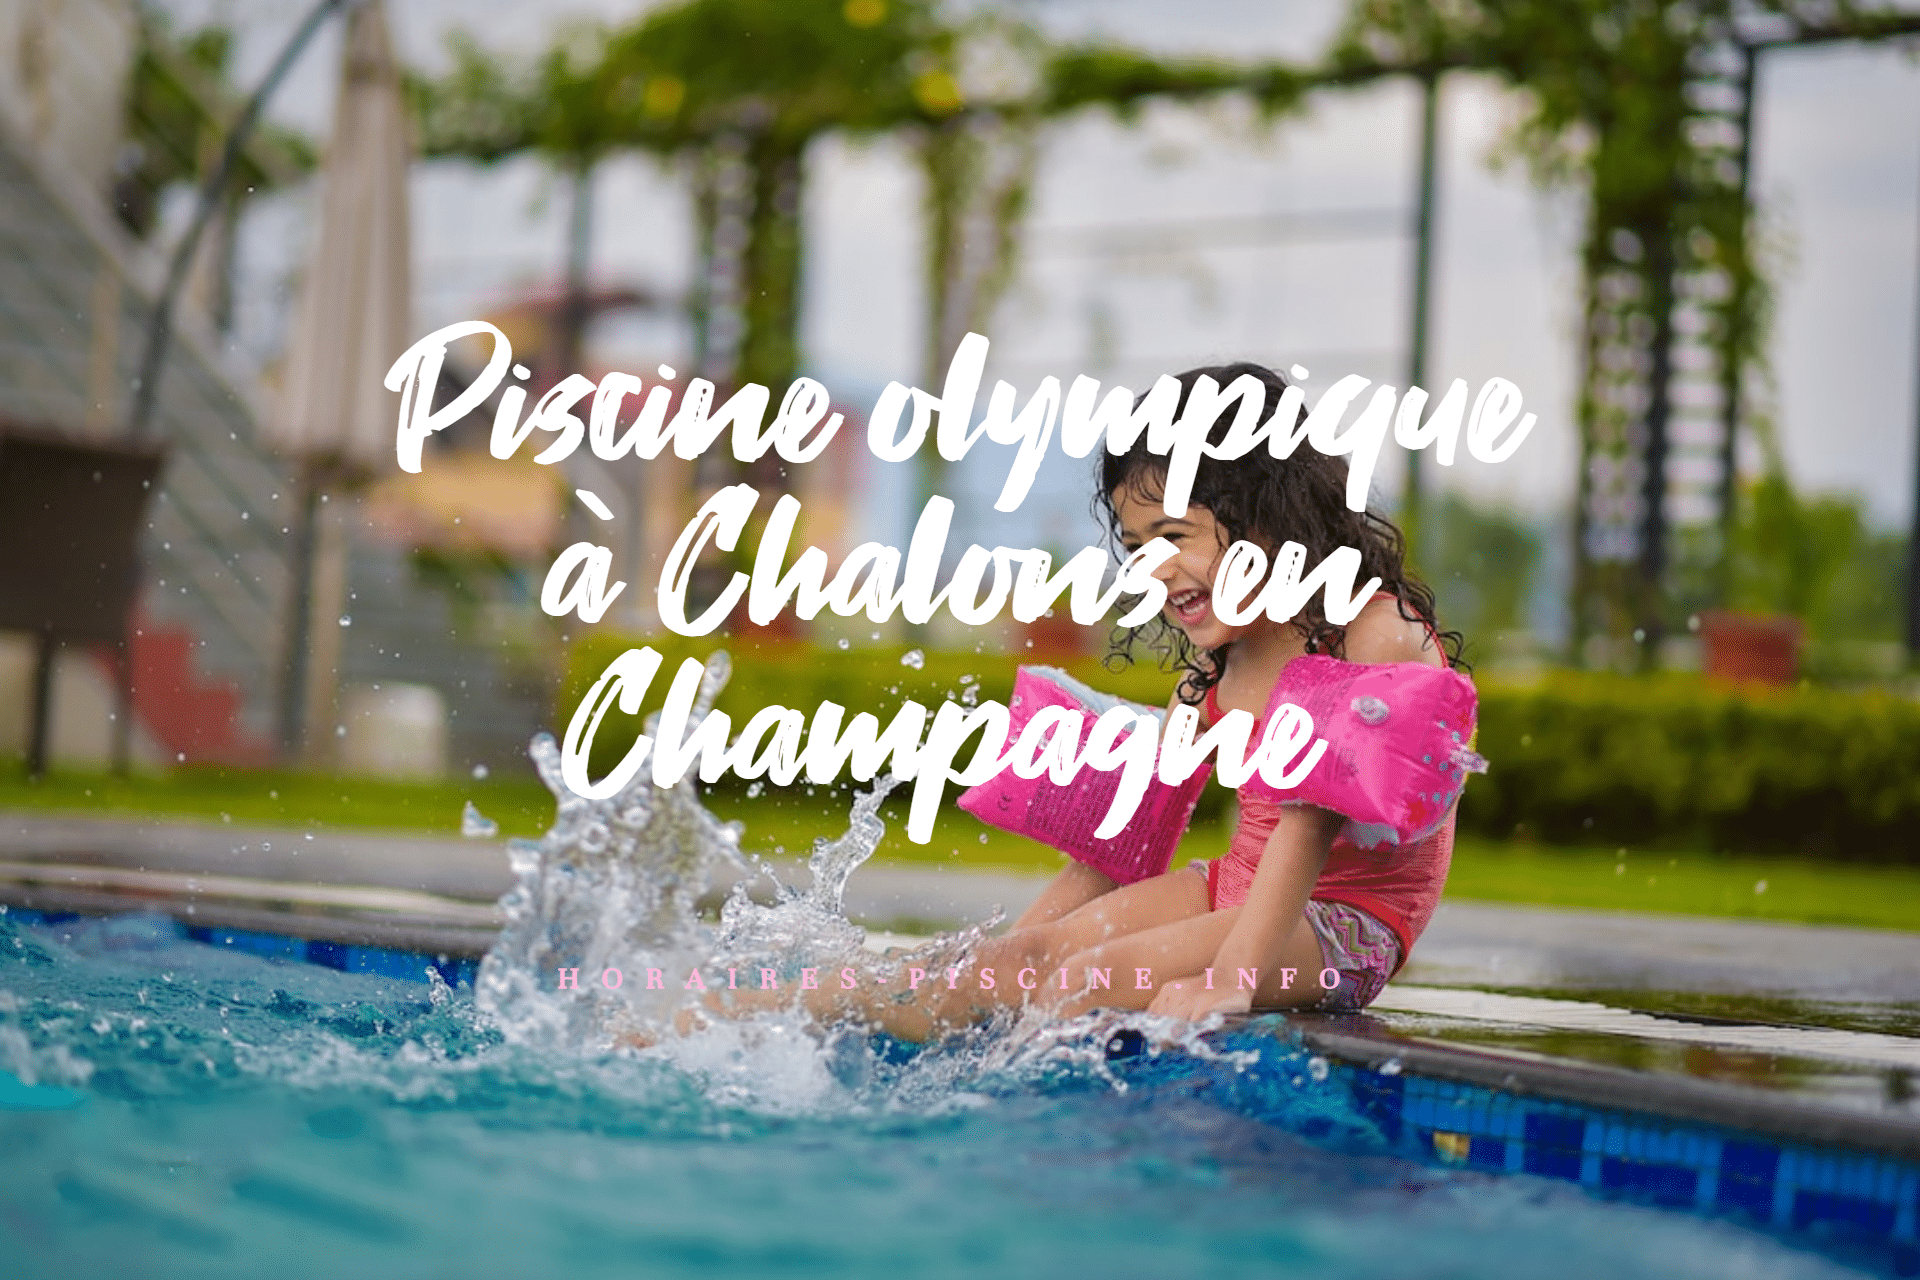 Piscine olympique à Chalons en Champagne